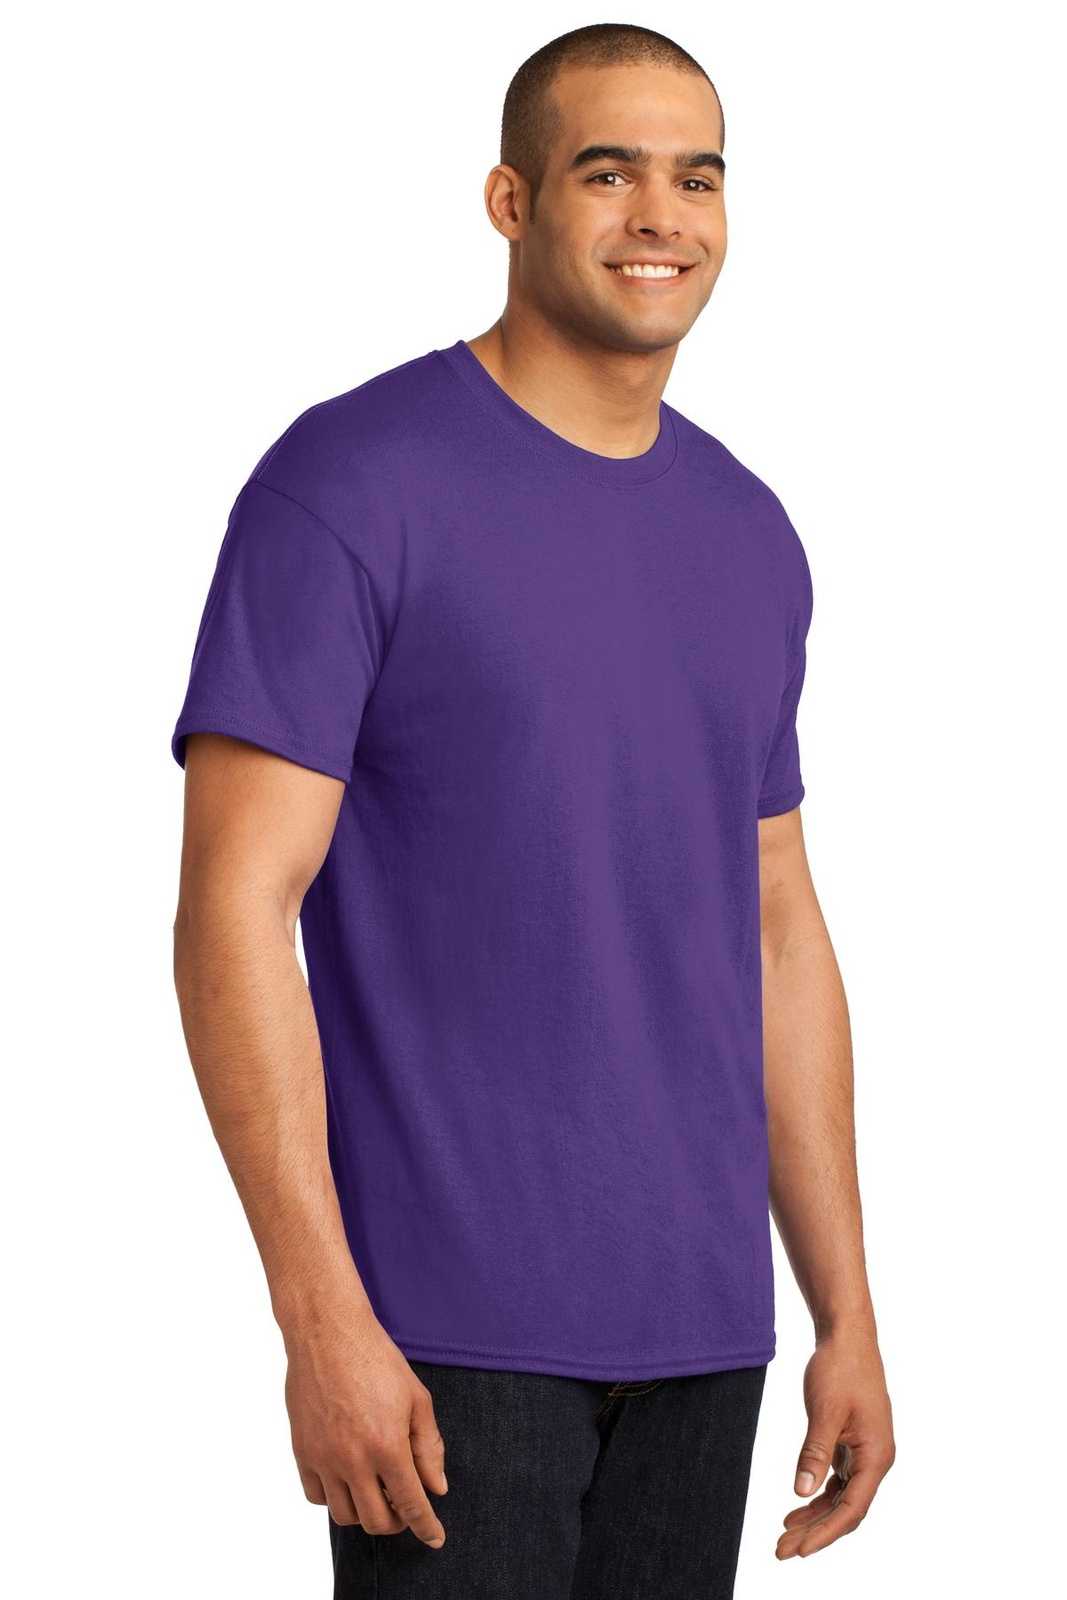 Hanes 5170 Ecosmart 50/50 Cotton/Poly T-Shirt - Purple - HIT a Double